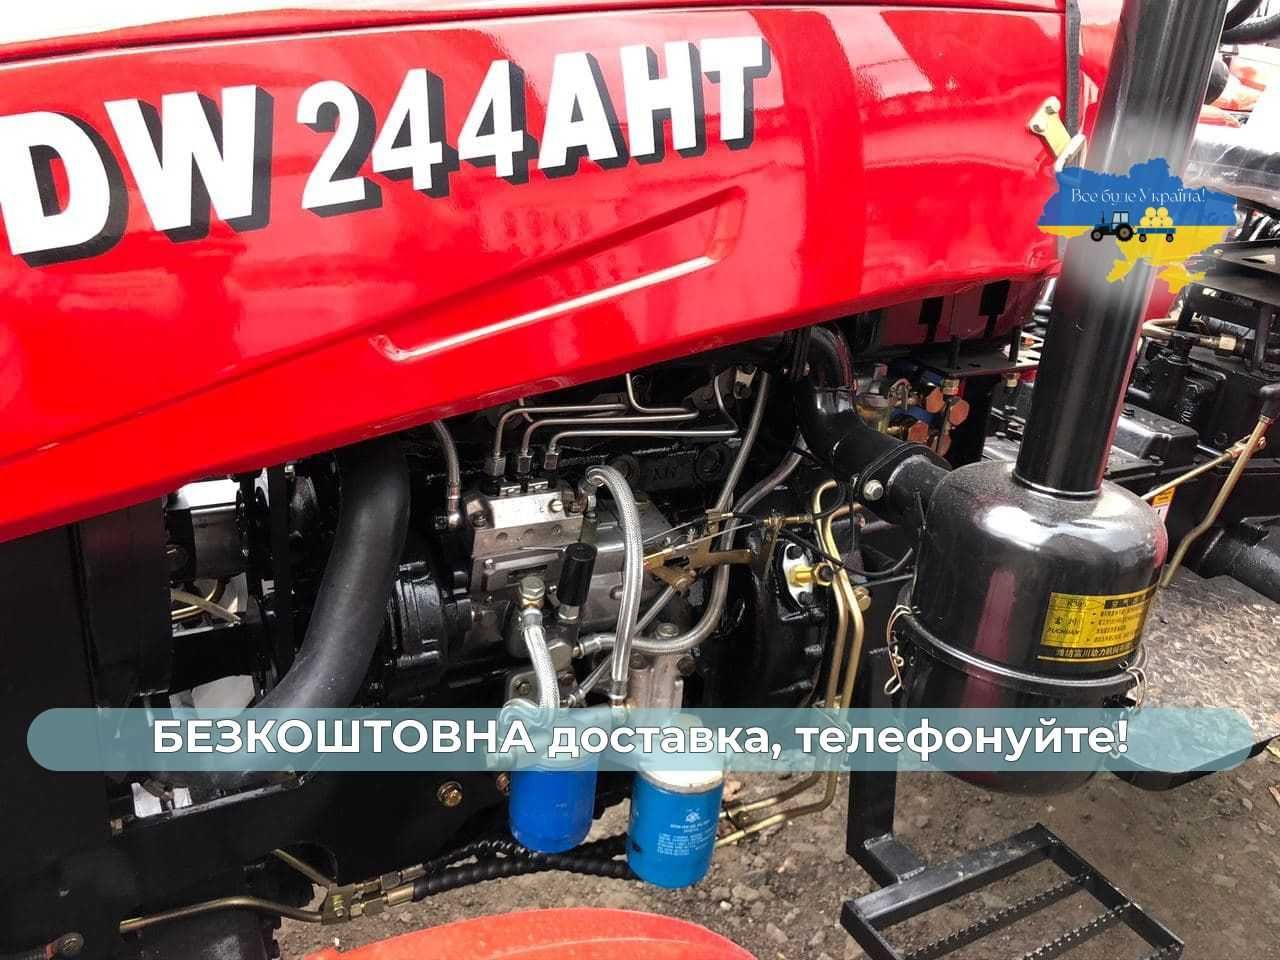 Трактор ДВ 244 AHT +ЗИП+МАСЛА+4х4+Доставка БЕСПЛАТНАЯ